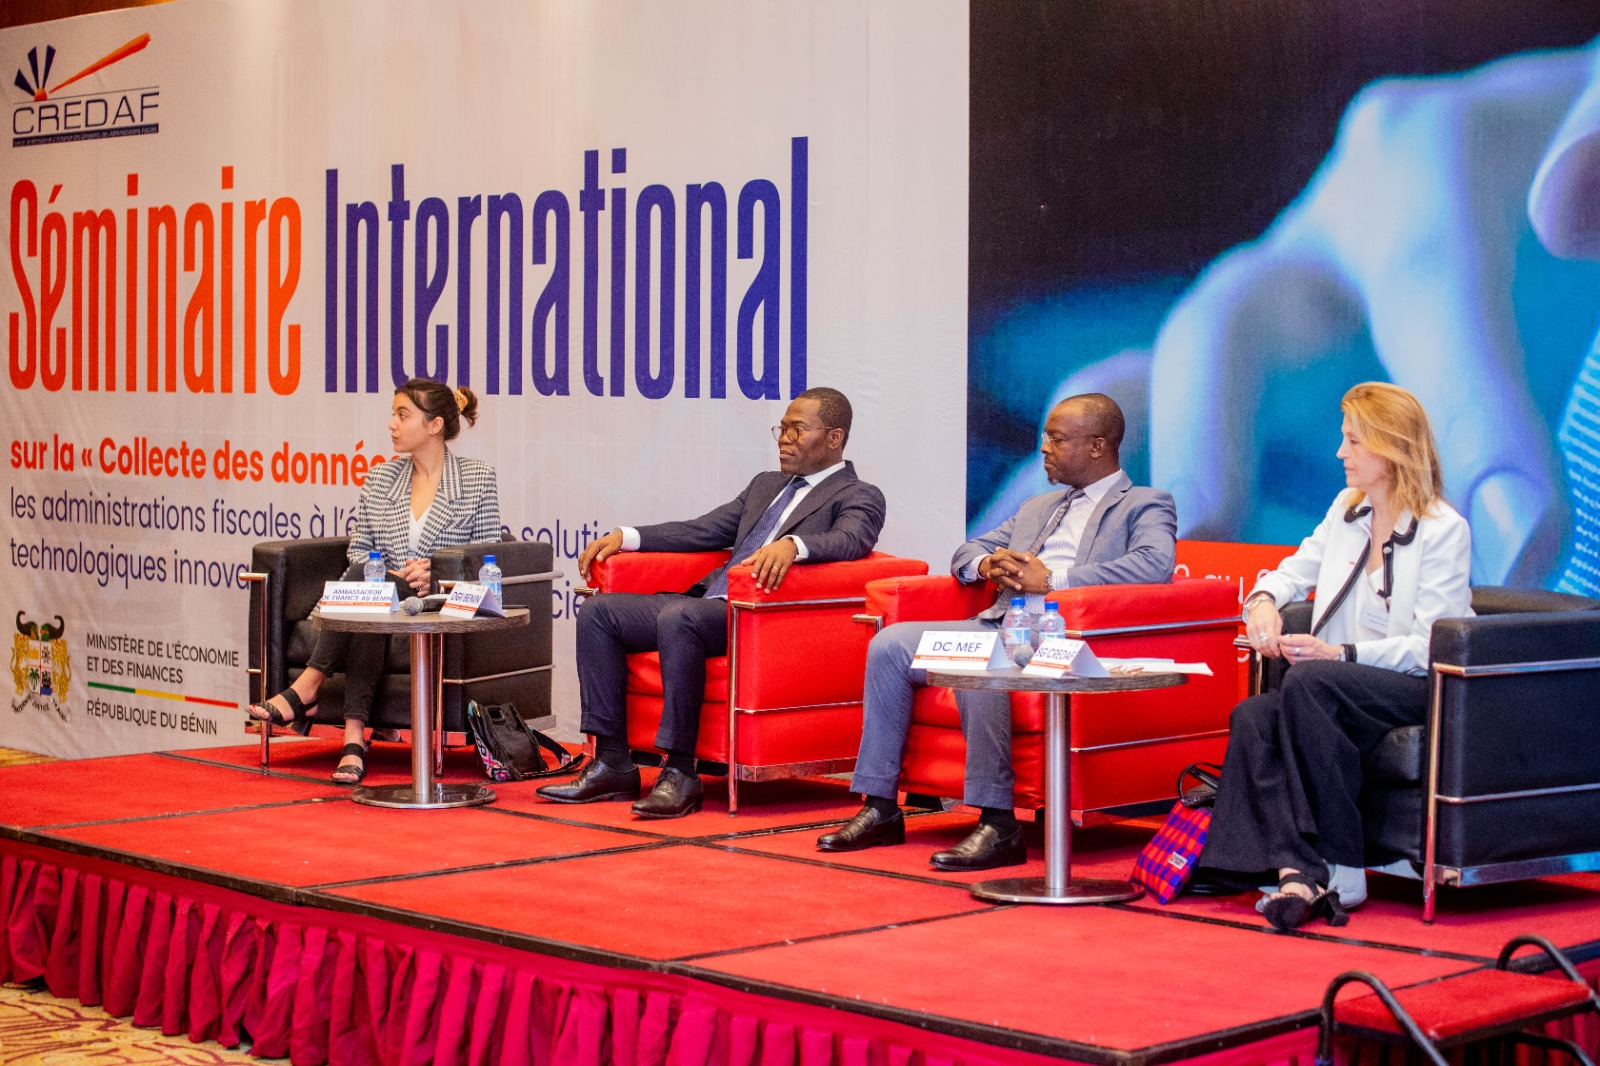 Bénin : Le CREDAF passe en revue les bonnes pratiques de l’IA et du datamining au sein des administrations fiscales